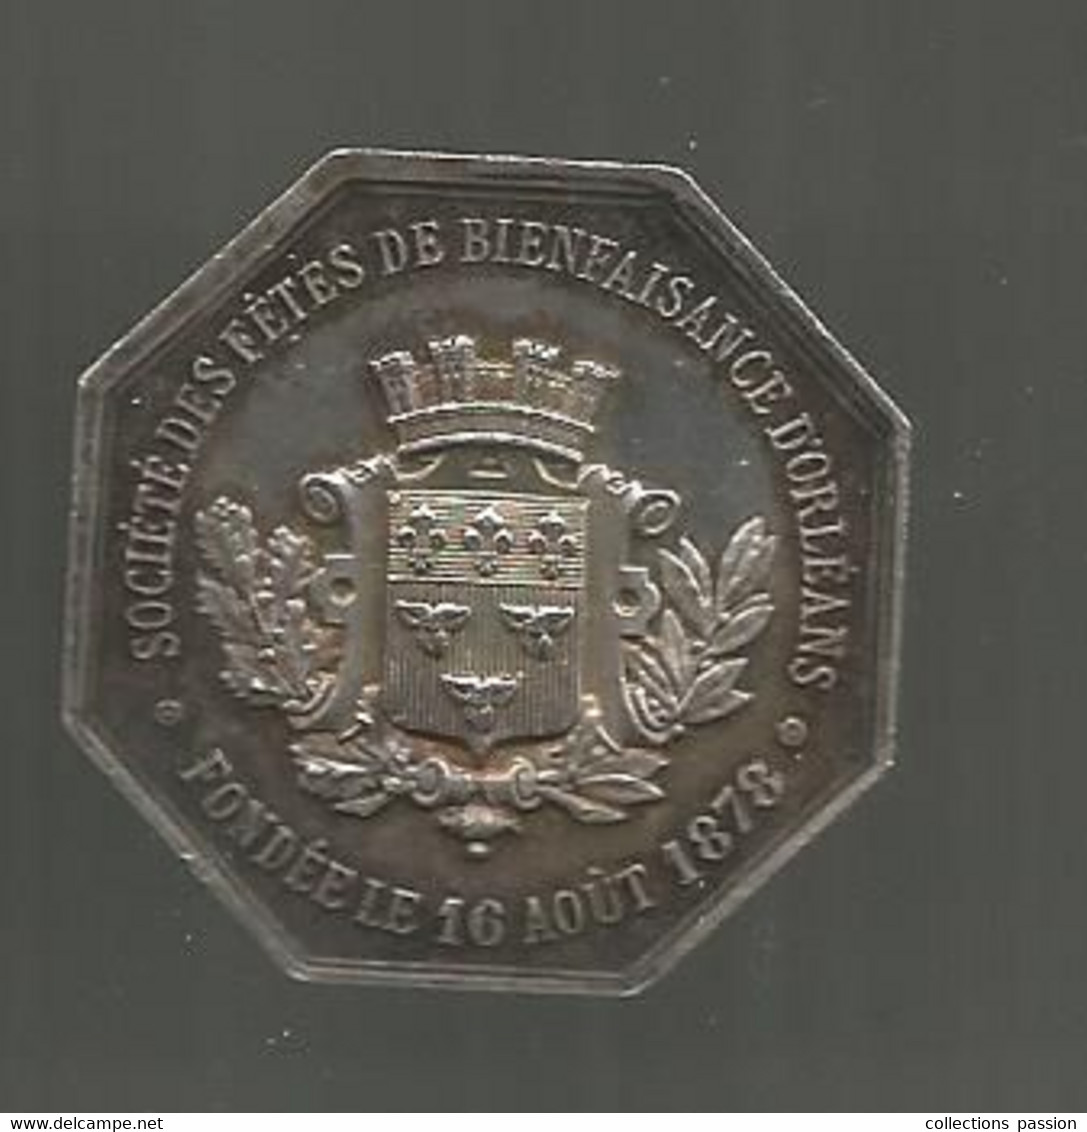 Jeton Argent, Société Des Fêtes De Bienfaisance D'ORLEANS Fondée Le 16 Août 1878, 2 Scans, 33 X 33 Mm - Professionnels / De Société